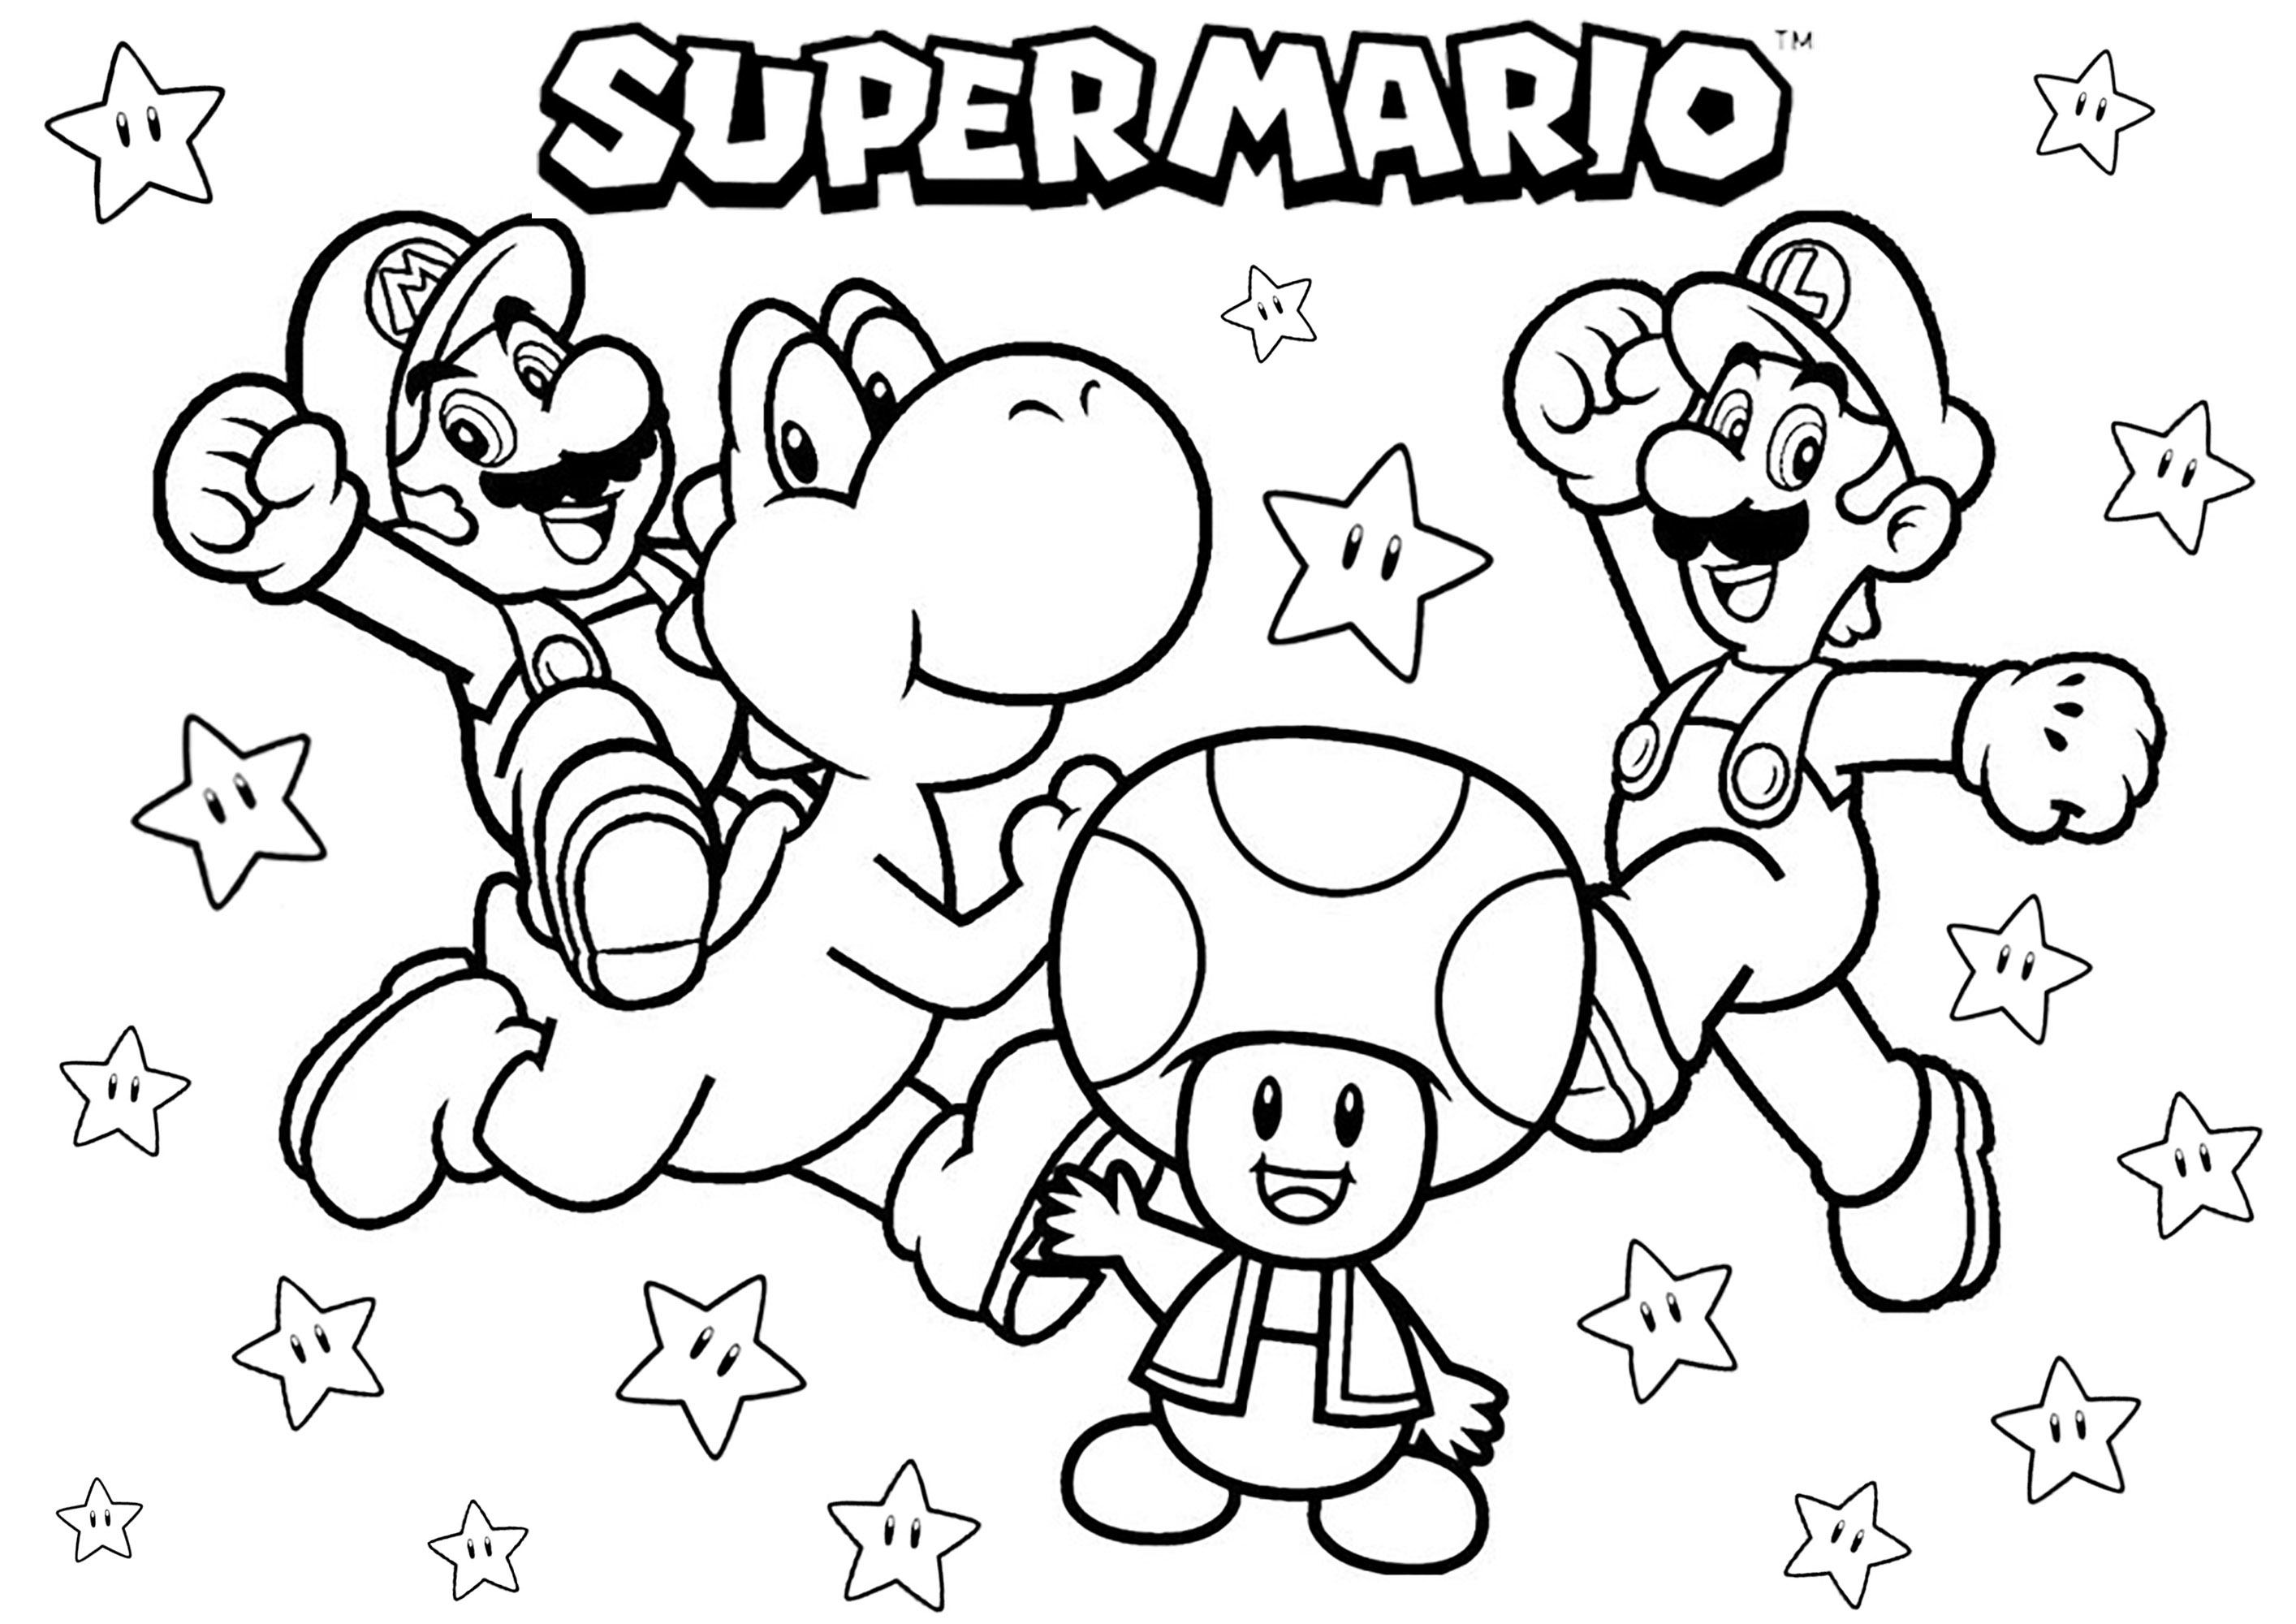 Mario, Luigi, Yoshi y Toad. Recuerda los días en que jugabas a Super Mario en tu consola Nintendo, gracias a esta simpática página para colorear con los hermanos Mario y Luigi, el dinosaurio Yoshi y la seta Toad... ¡sin olvidar un montón de estrellas!